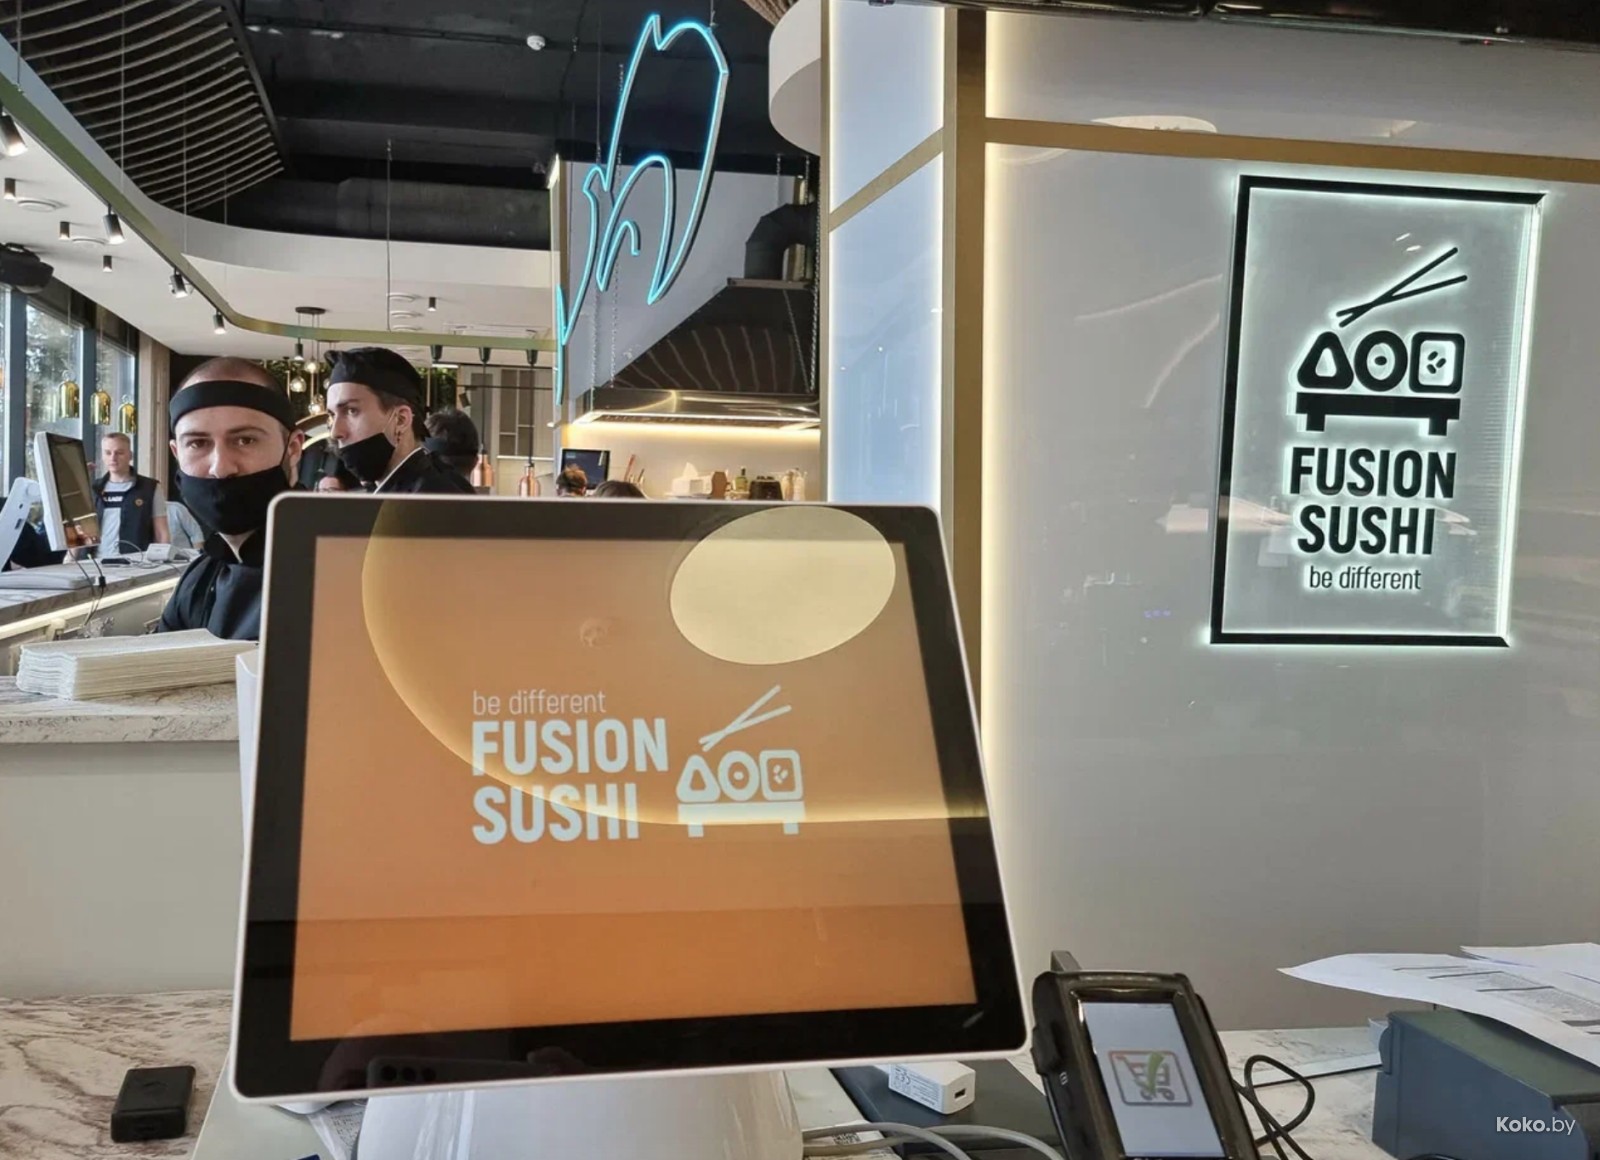 Fusion sushi. Дёлер НЭЙЧРЭЛ фуд энд БЕВЭРИДЖ Ингредиентс.